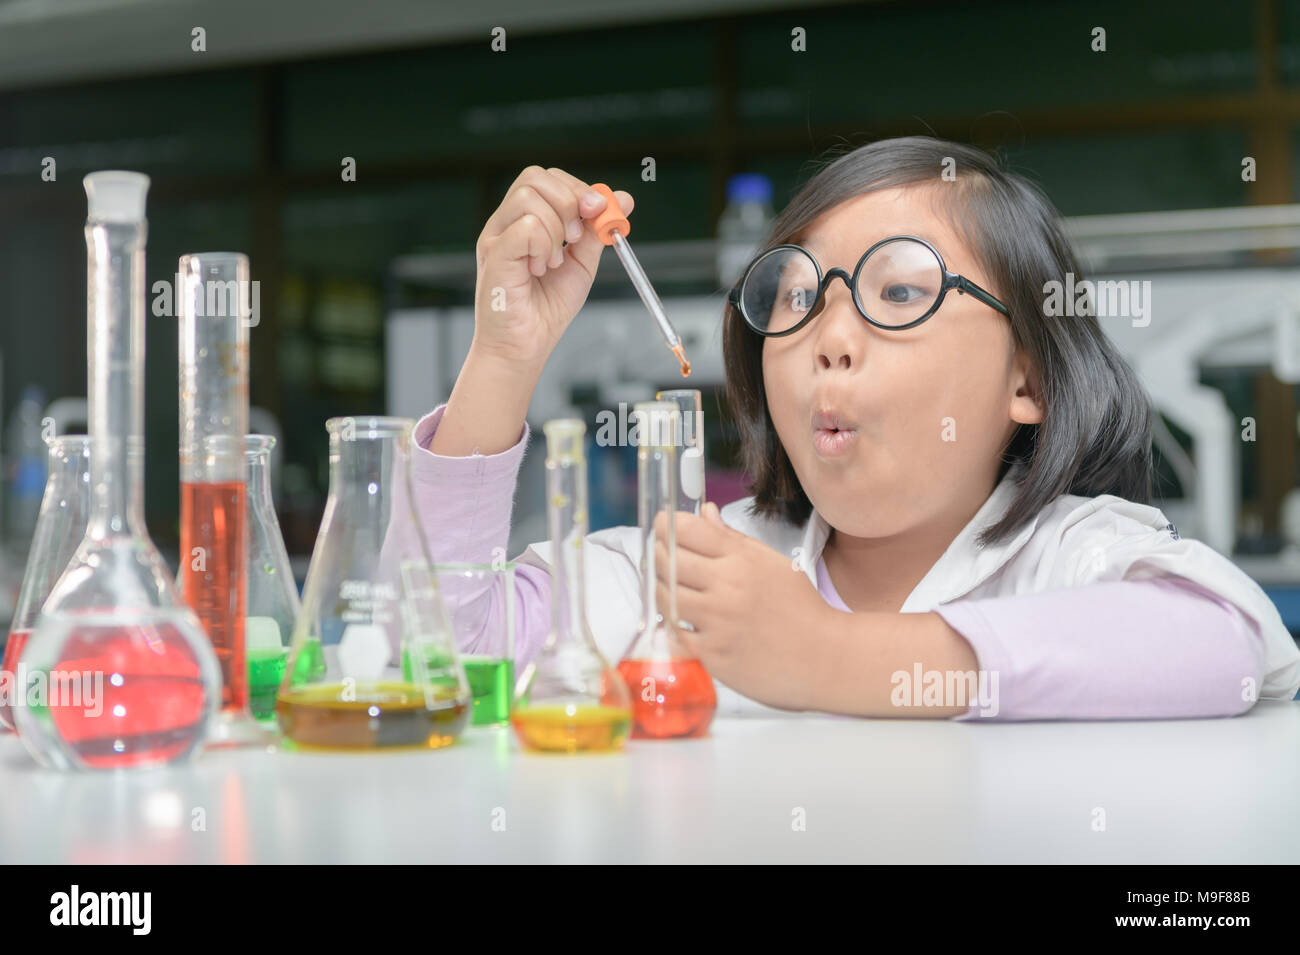 Petite fille excité in lab coat faire expérimenter avec tube à essai en  laboratoire de chimie, de la science et de l'éducation concept Photo Stock  - Alamy